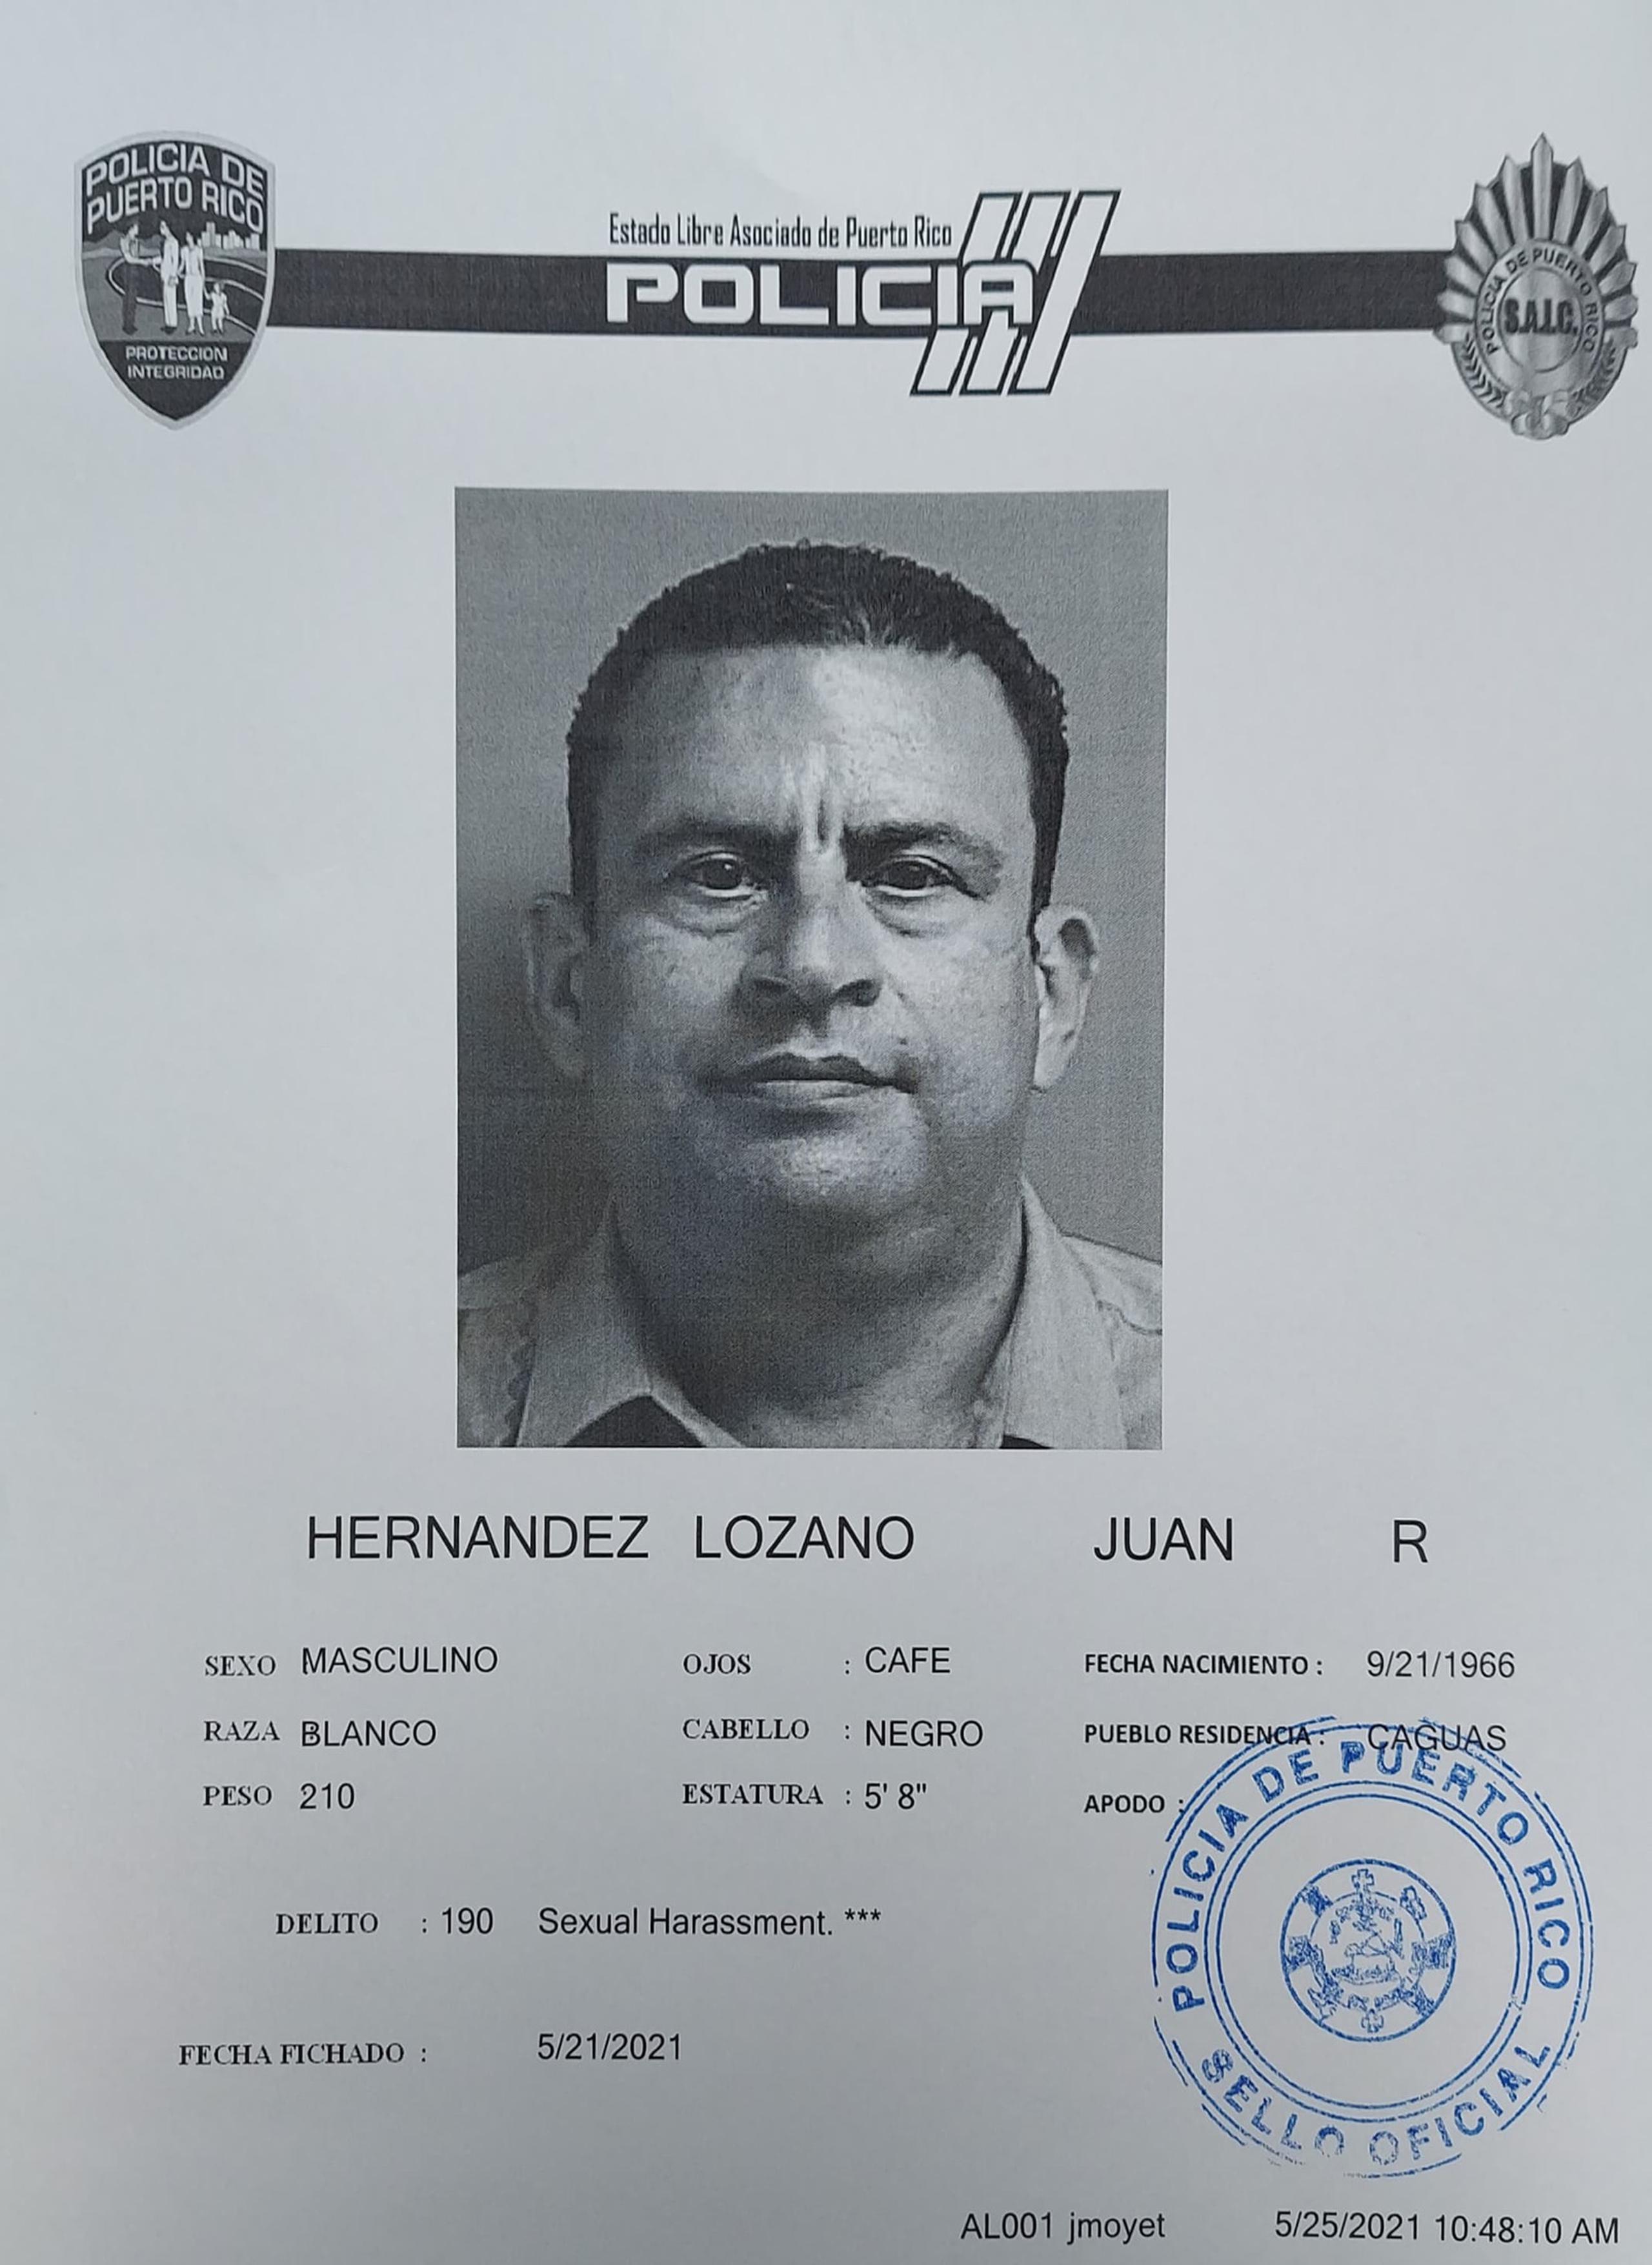 Juan R. Hernández Lozano.